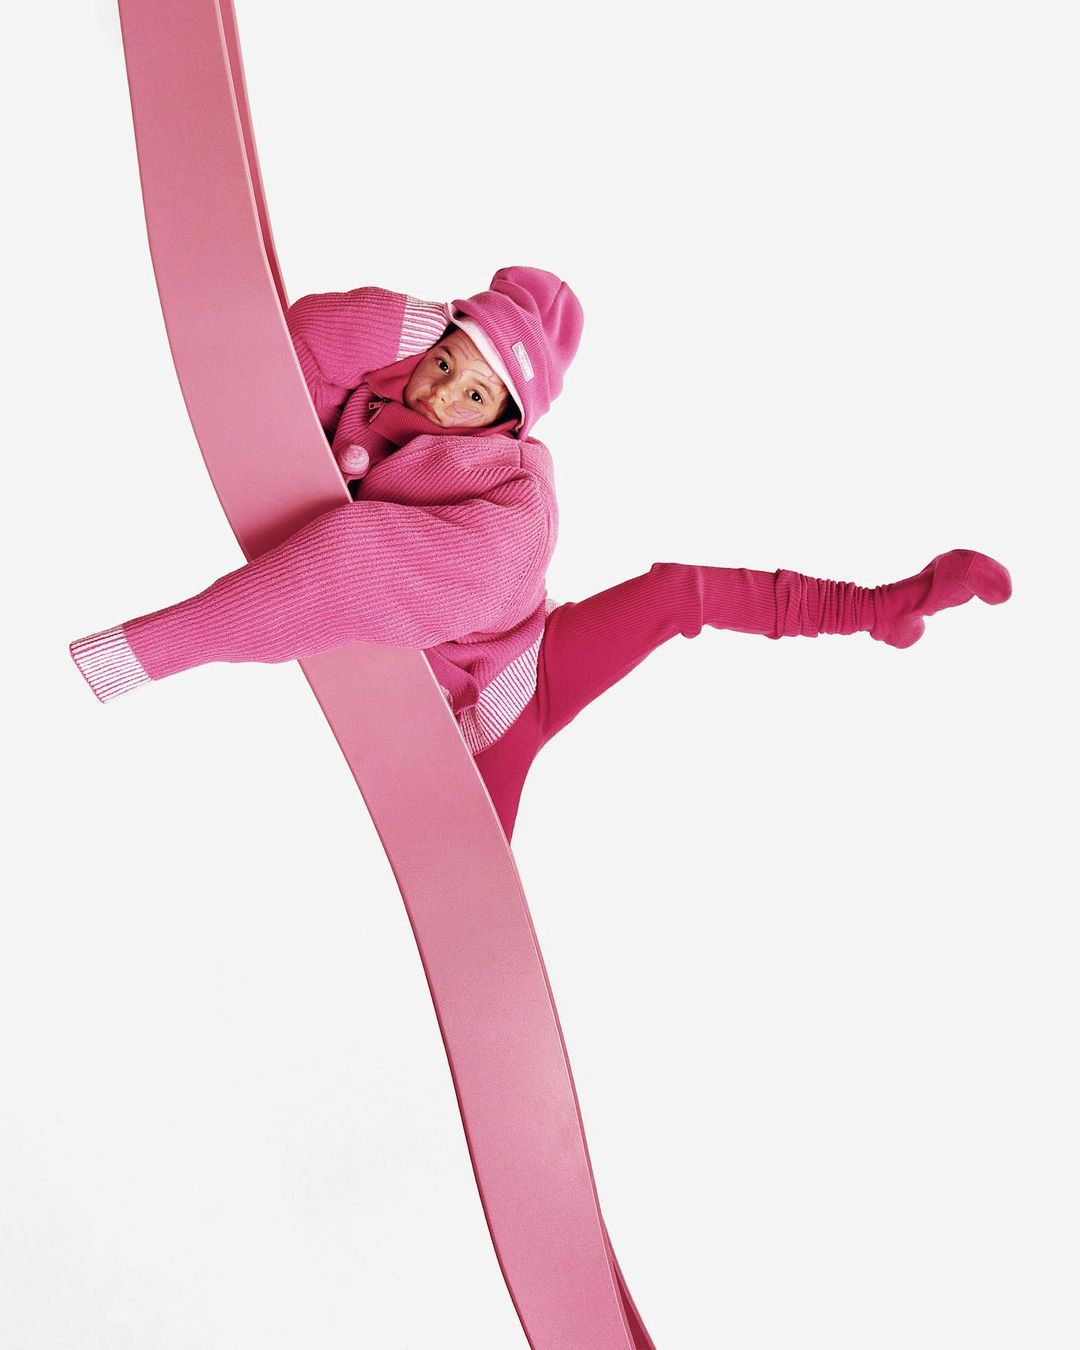 Симон Порт Жакмюс выпустил новую праздничную капсулу в розовых оттенках (фото 6)